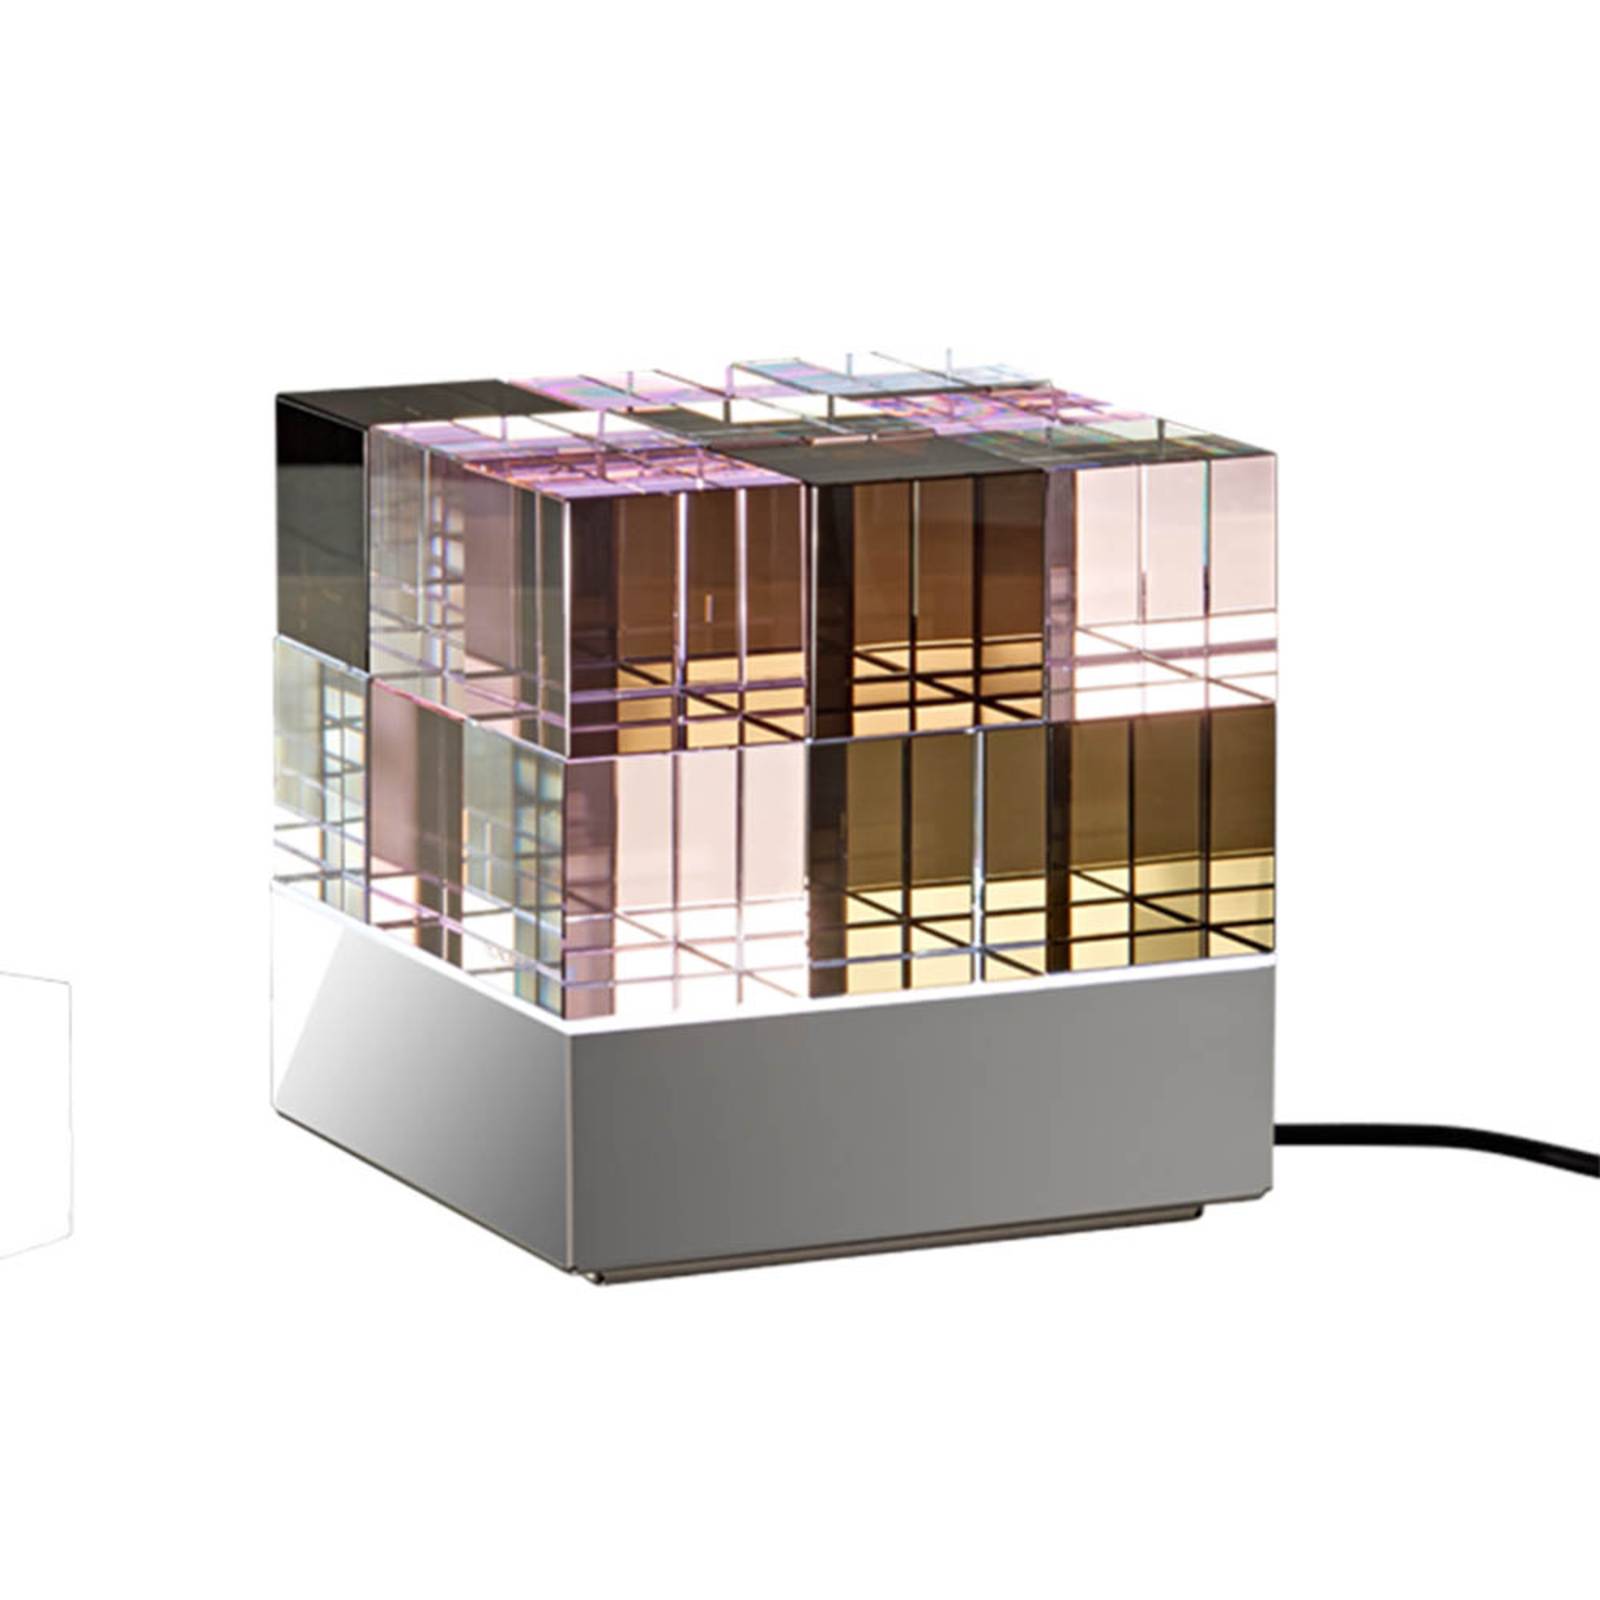 TECNOLUMEN Cubelight lampe à table LED, rose/noir